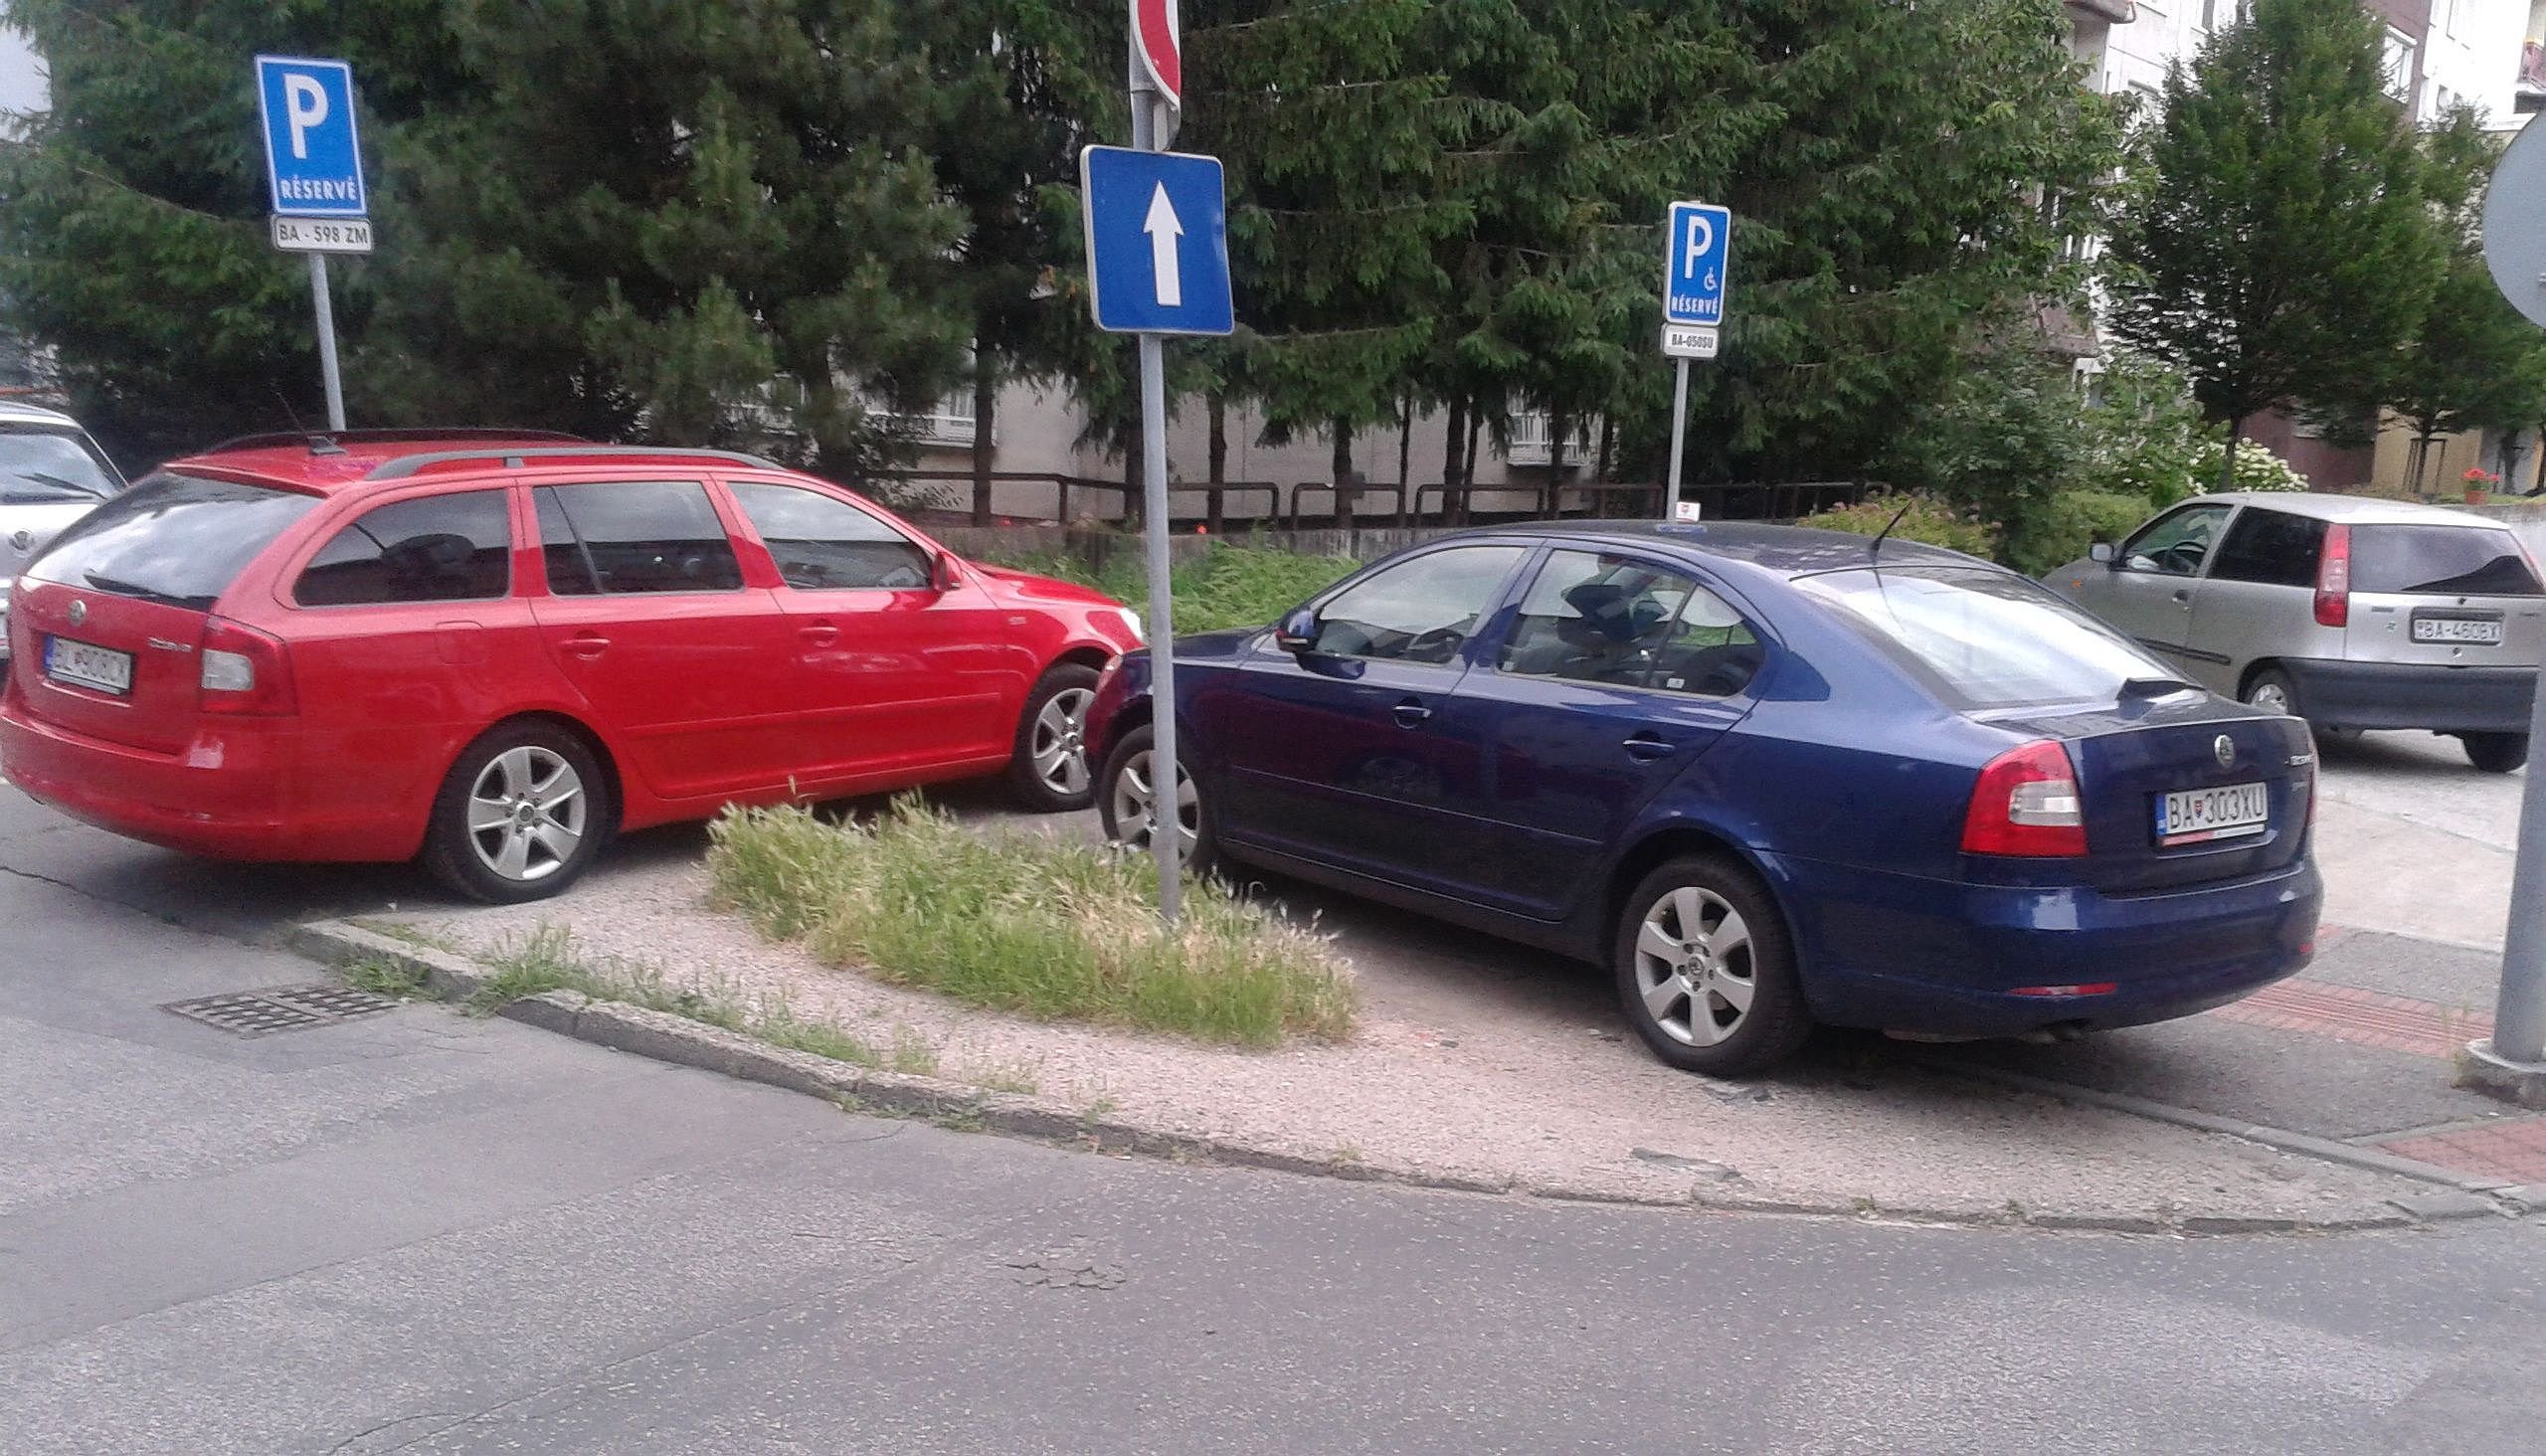 Parkovanie na chodníku - Klincová ul., Ružinov, Bratislava |  Odkazprestarostu.sk